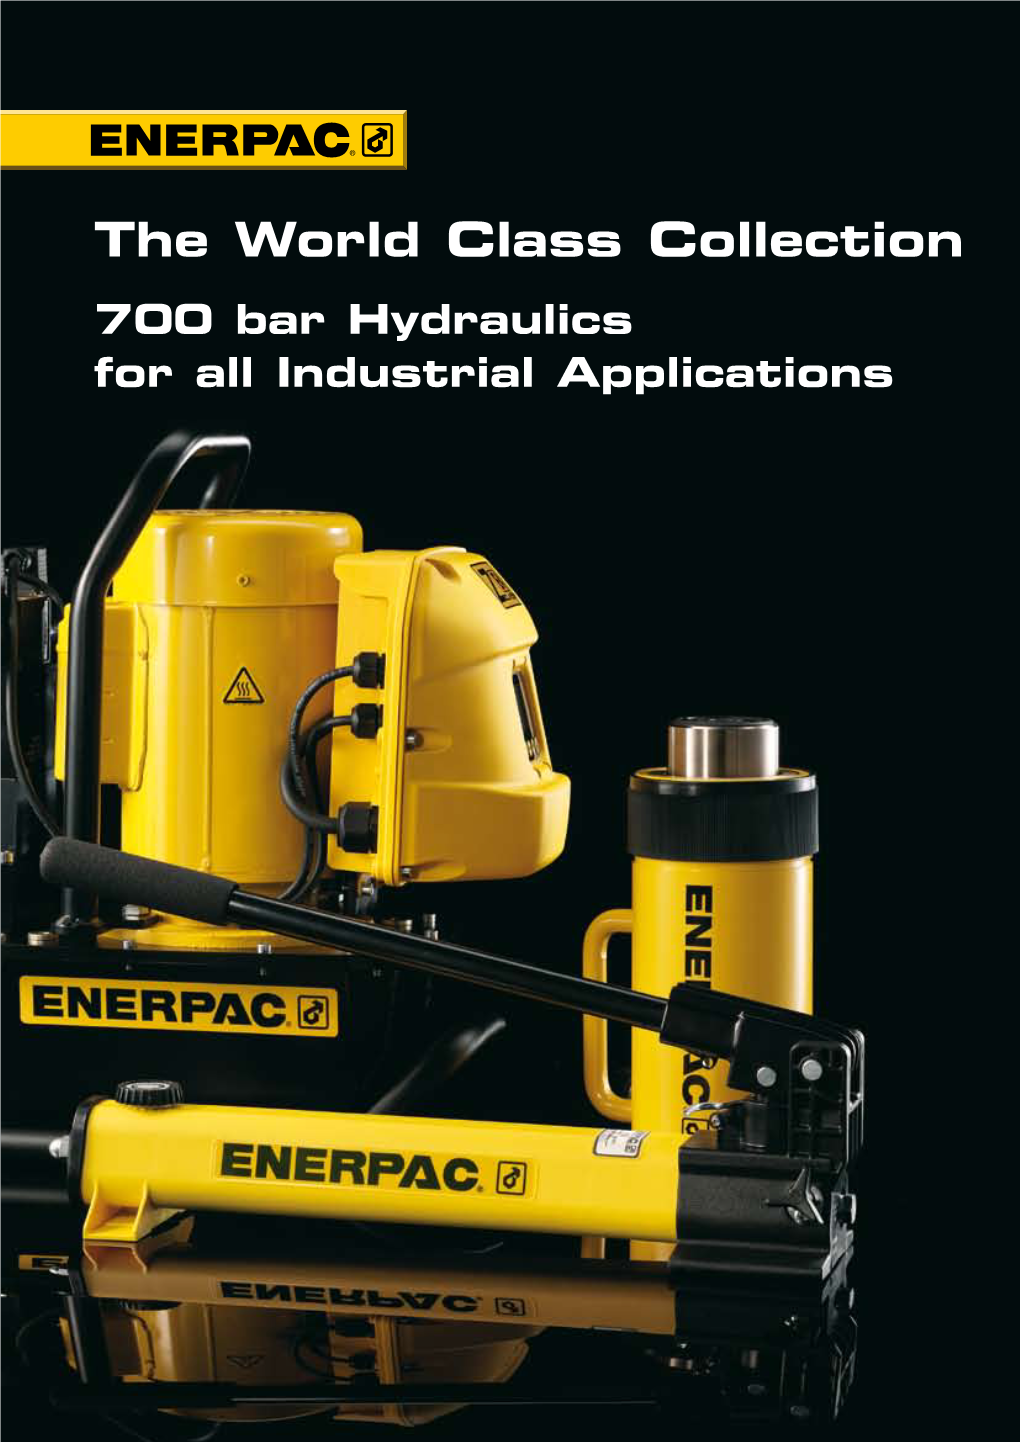 Enerpac Hydraulic Pumps: Hydraulic Technology Worldwide